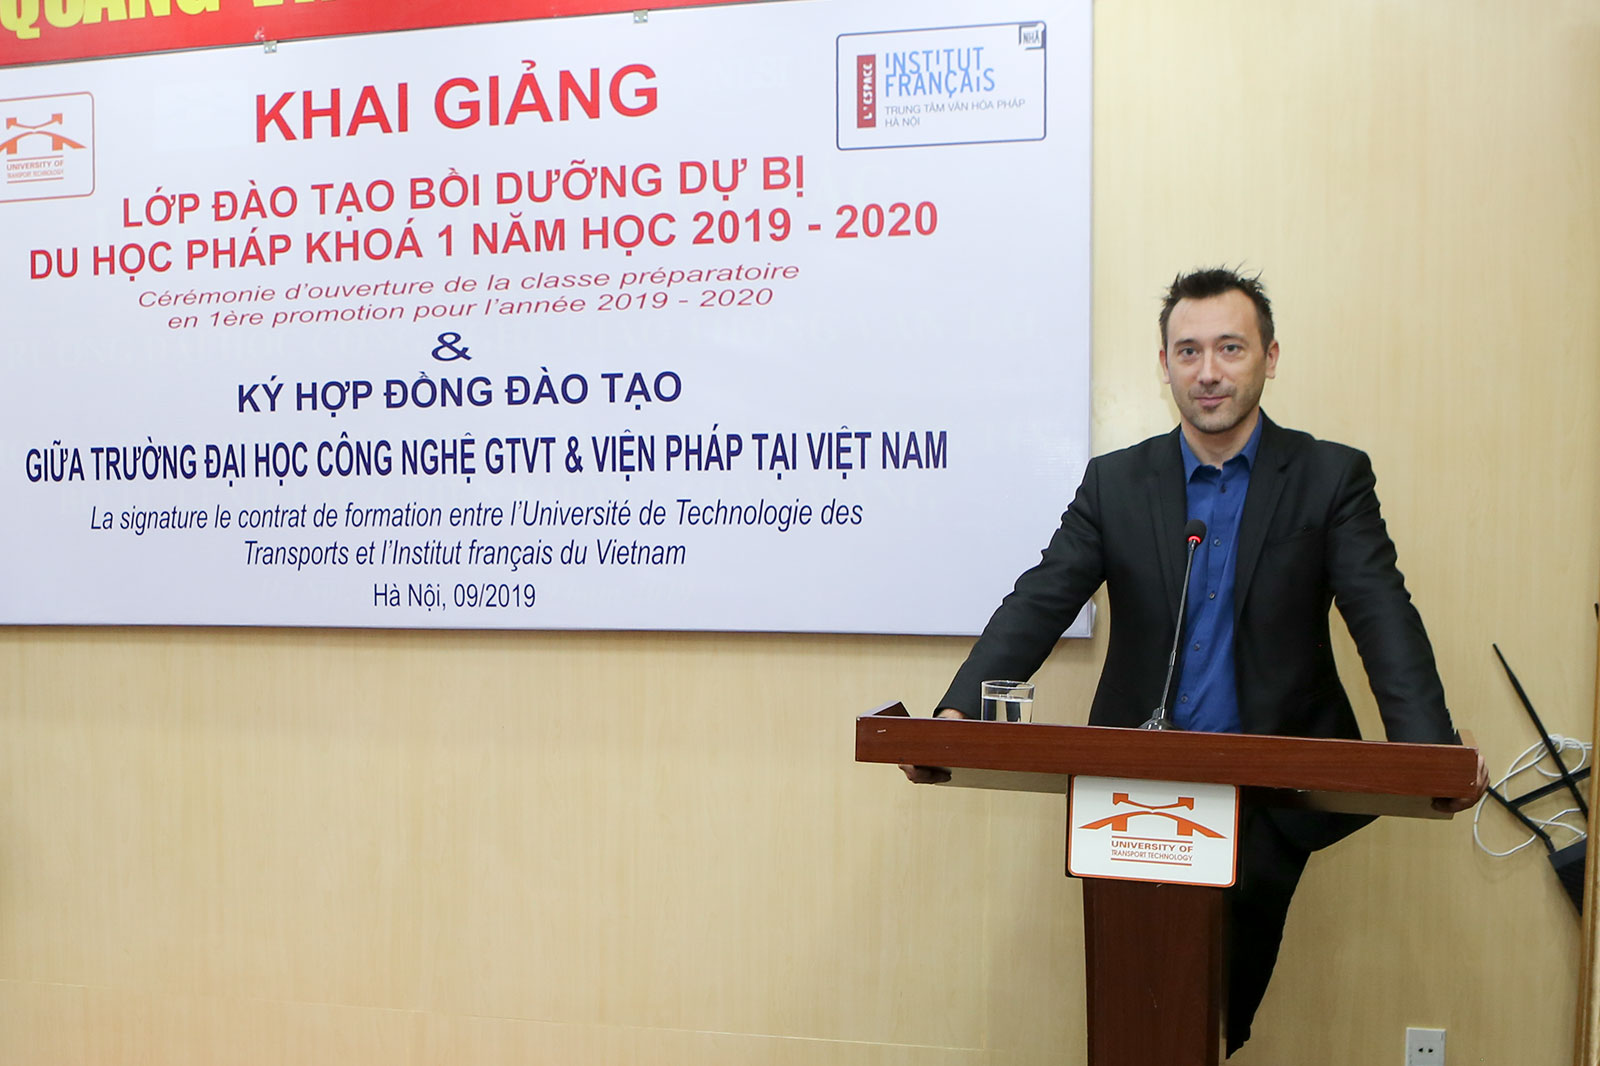 Khai giảng Lớp đào tạo bồi dưỡng dự bị du học Pháp khoá 1 năm học 2019 – 2020 và ký hợp đồng đào tạo với Viện Pháp tại Việt Nam